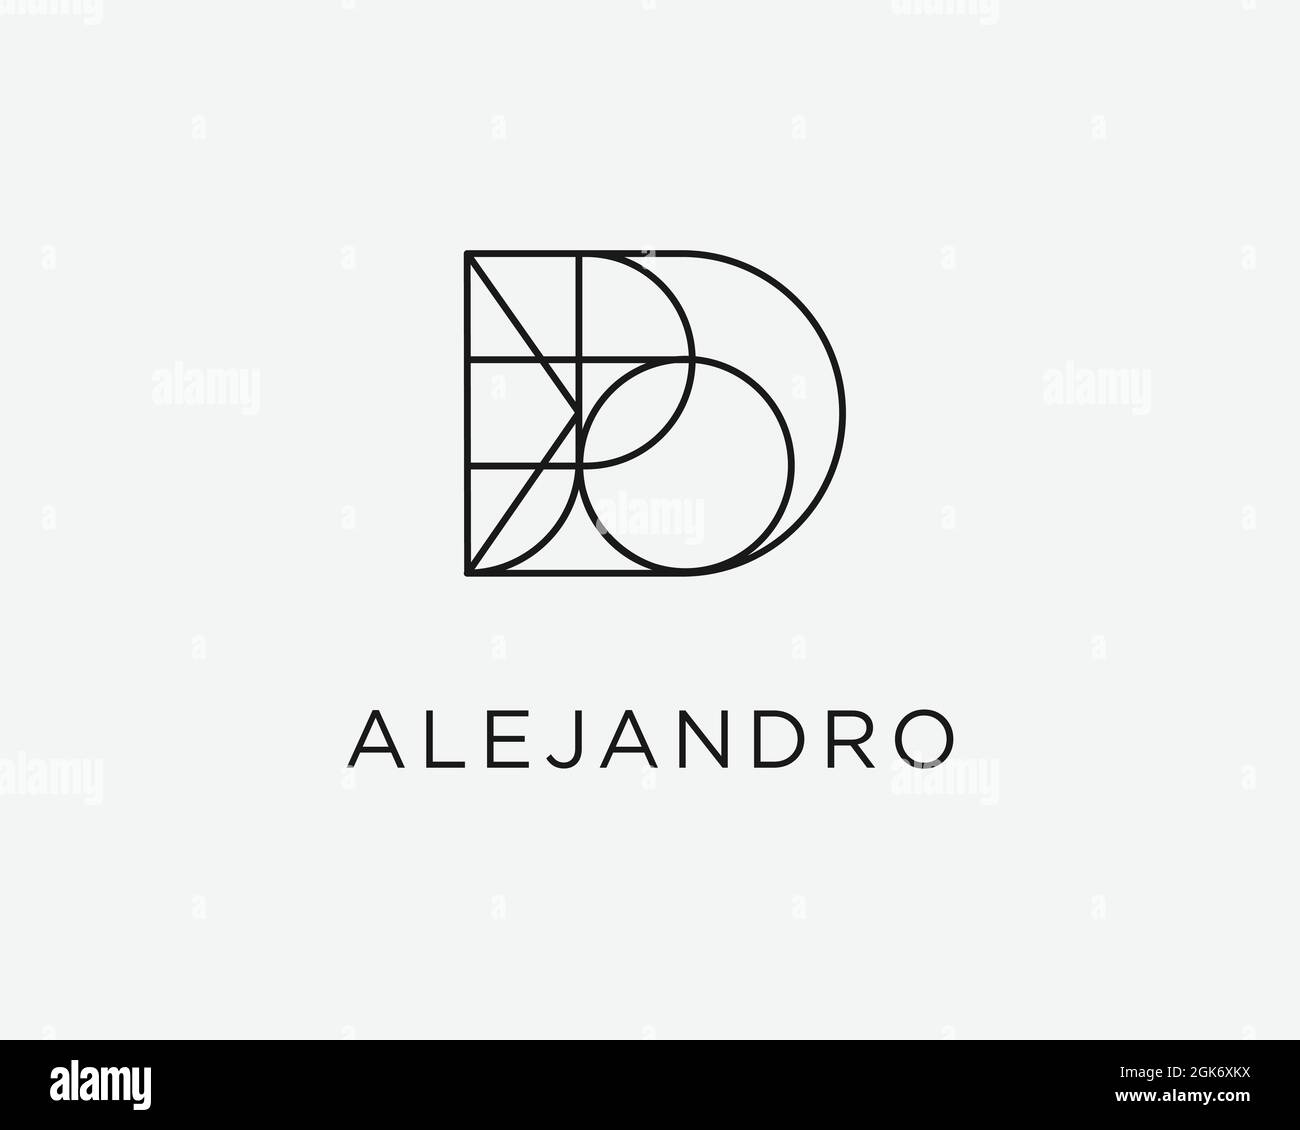 logo name Alejandro usable logo design for private logo, business name card web icon, social media icon Stock Vector